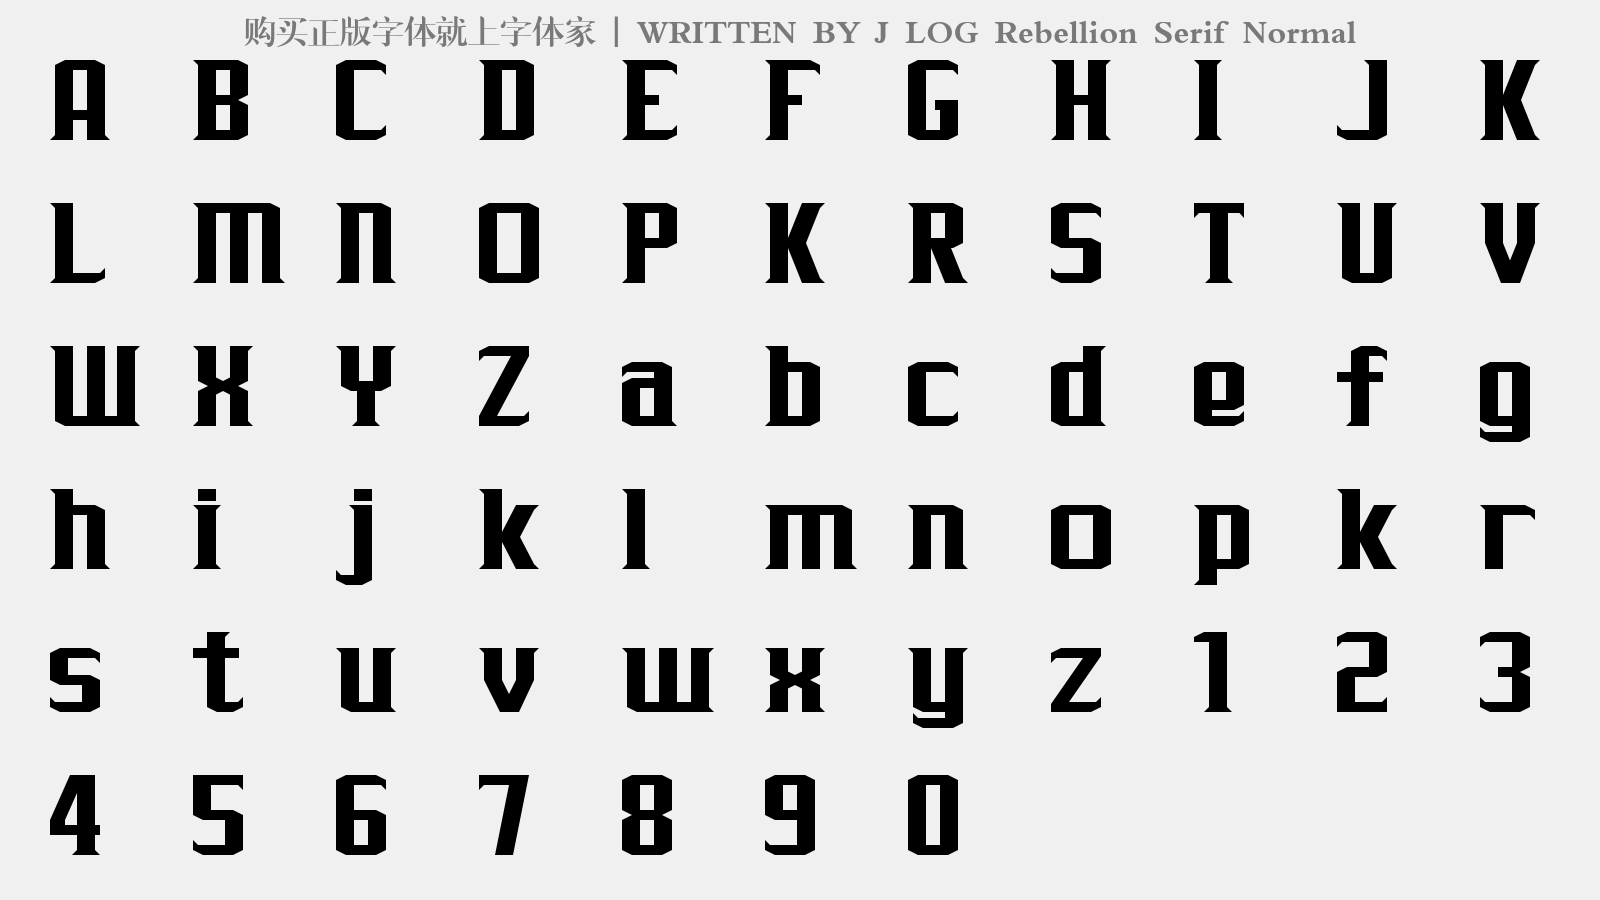 J LOG Rebellion Serif Normal - 大写字母/小写字母/数字